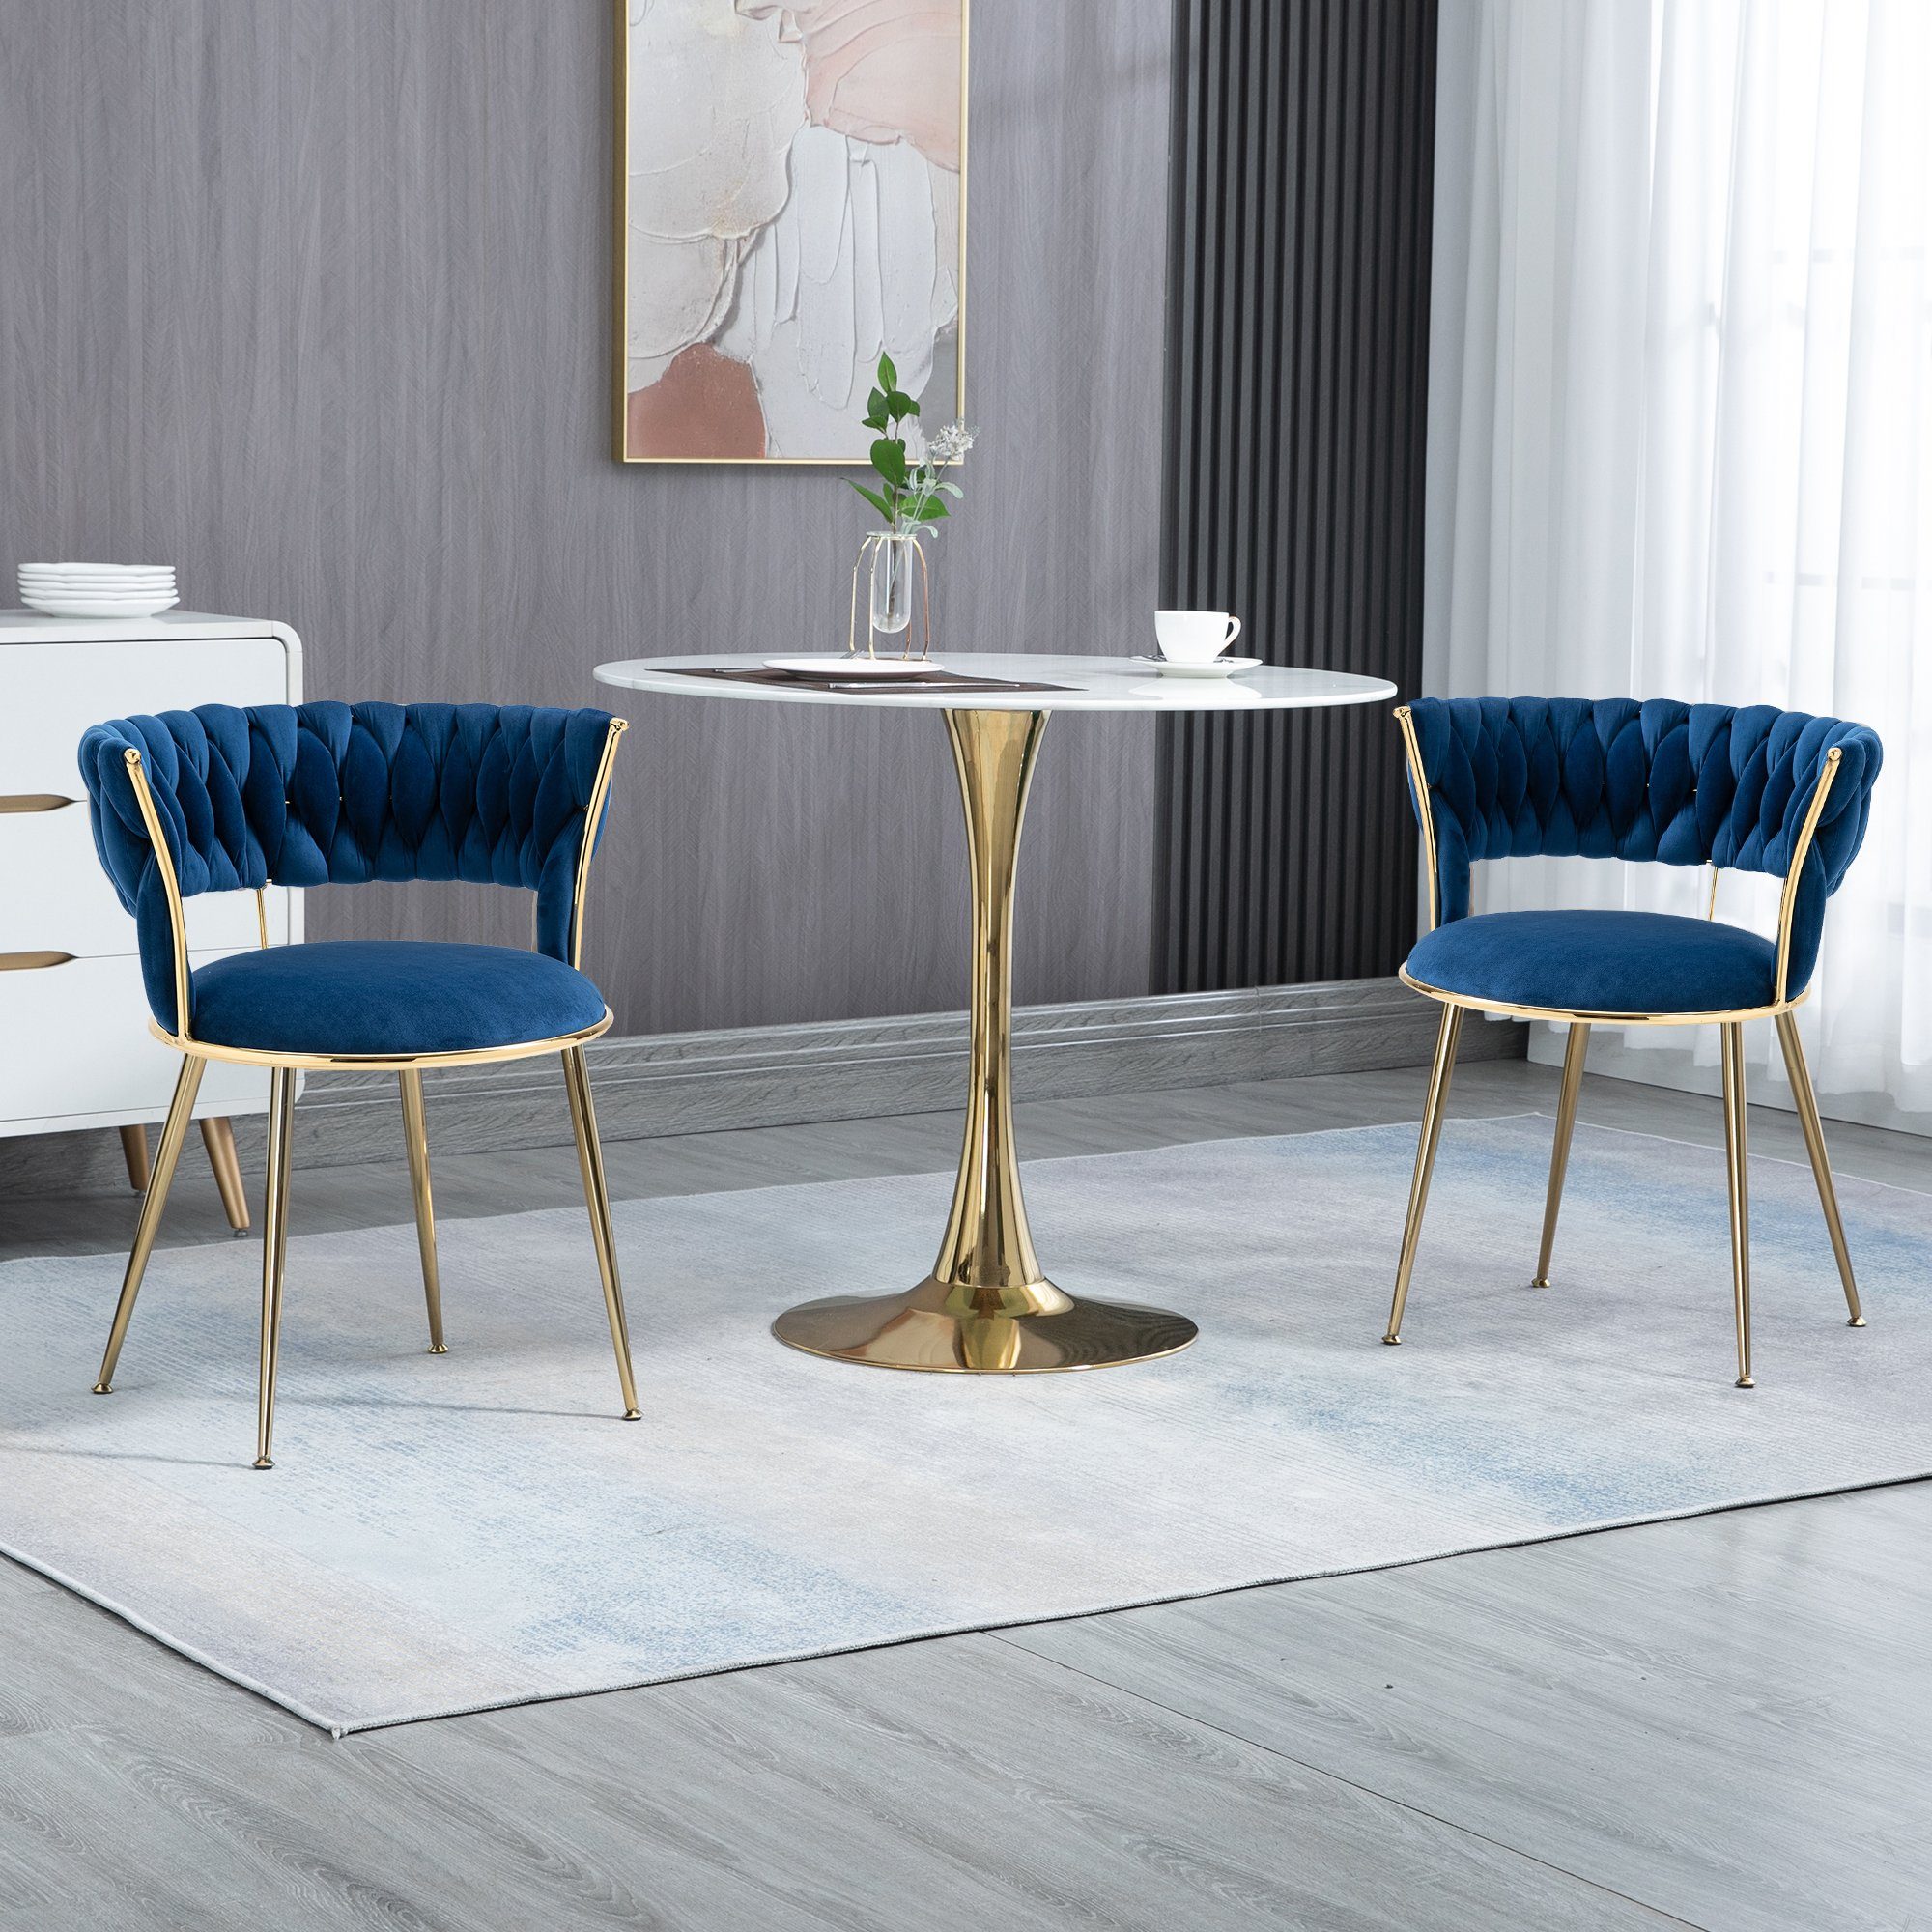 St Wohnzimmerstuhl Küchenstuhl Polsterstuhl Blau+Gold St) Polsterstuhl Esszimmerstuhl (2 2 HAUSS SPLOE